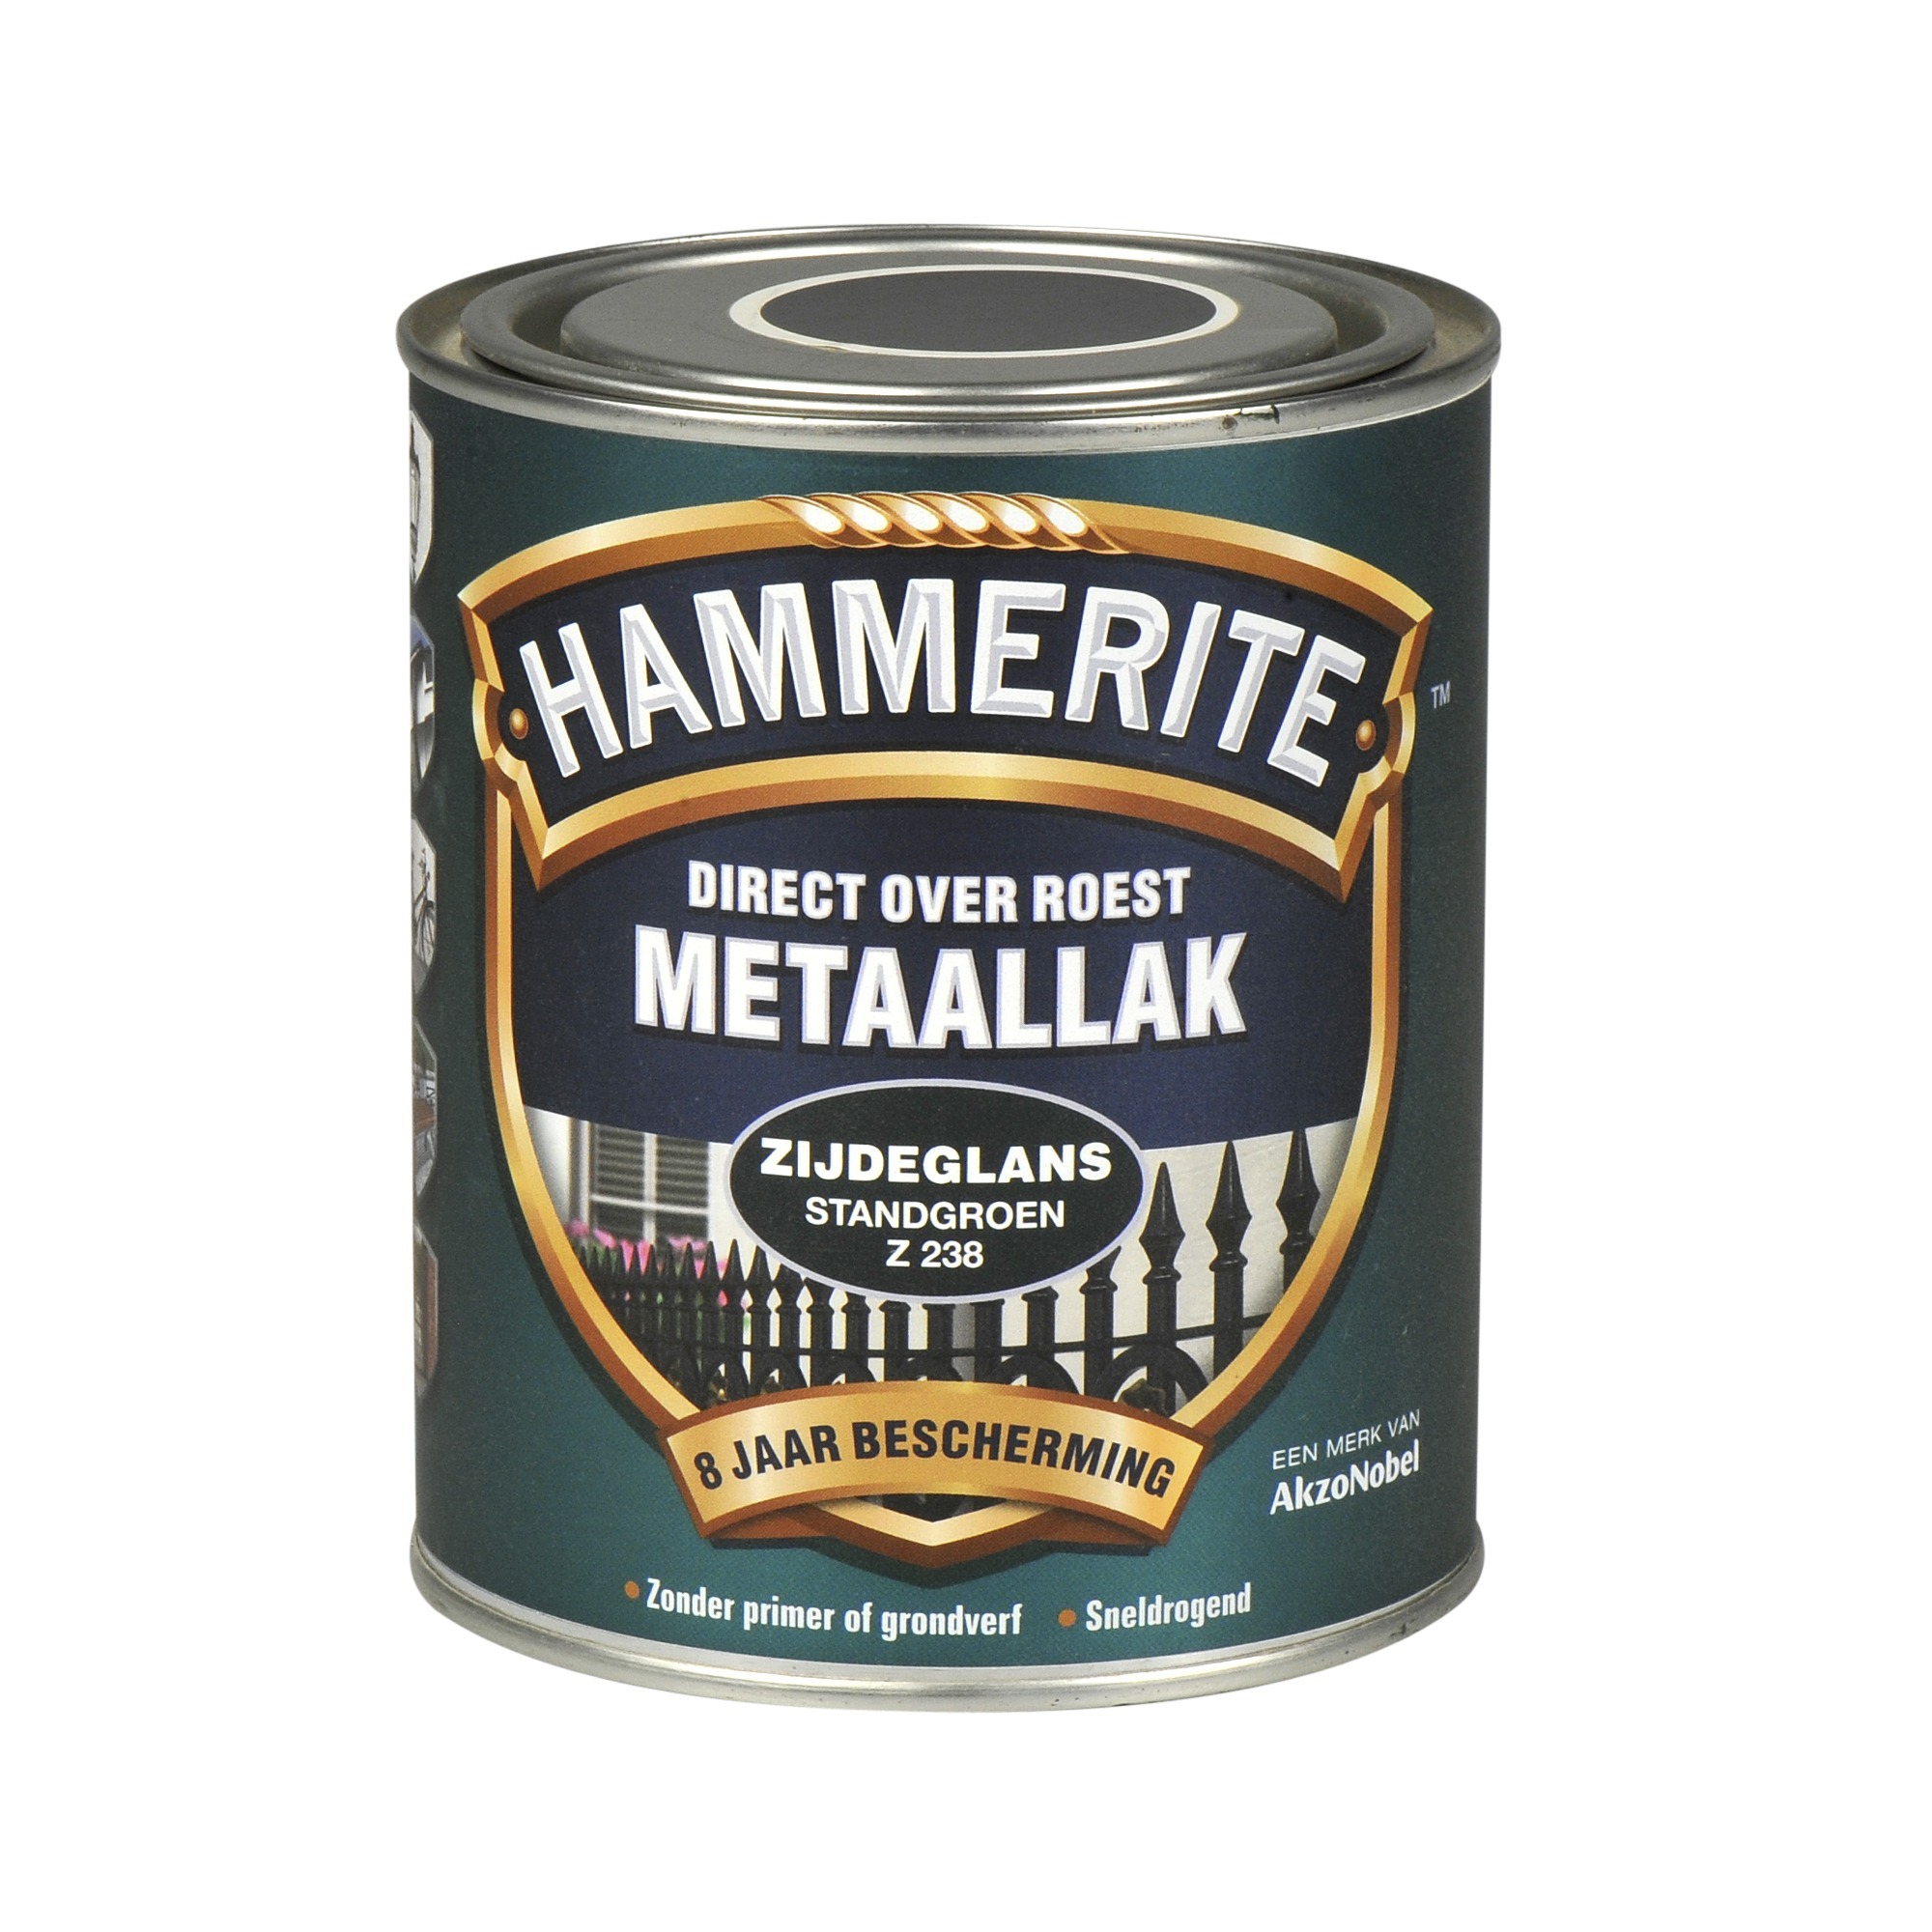 Hammerite direct over roest metaallak zijdeglans standgroen - 750 ml